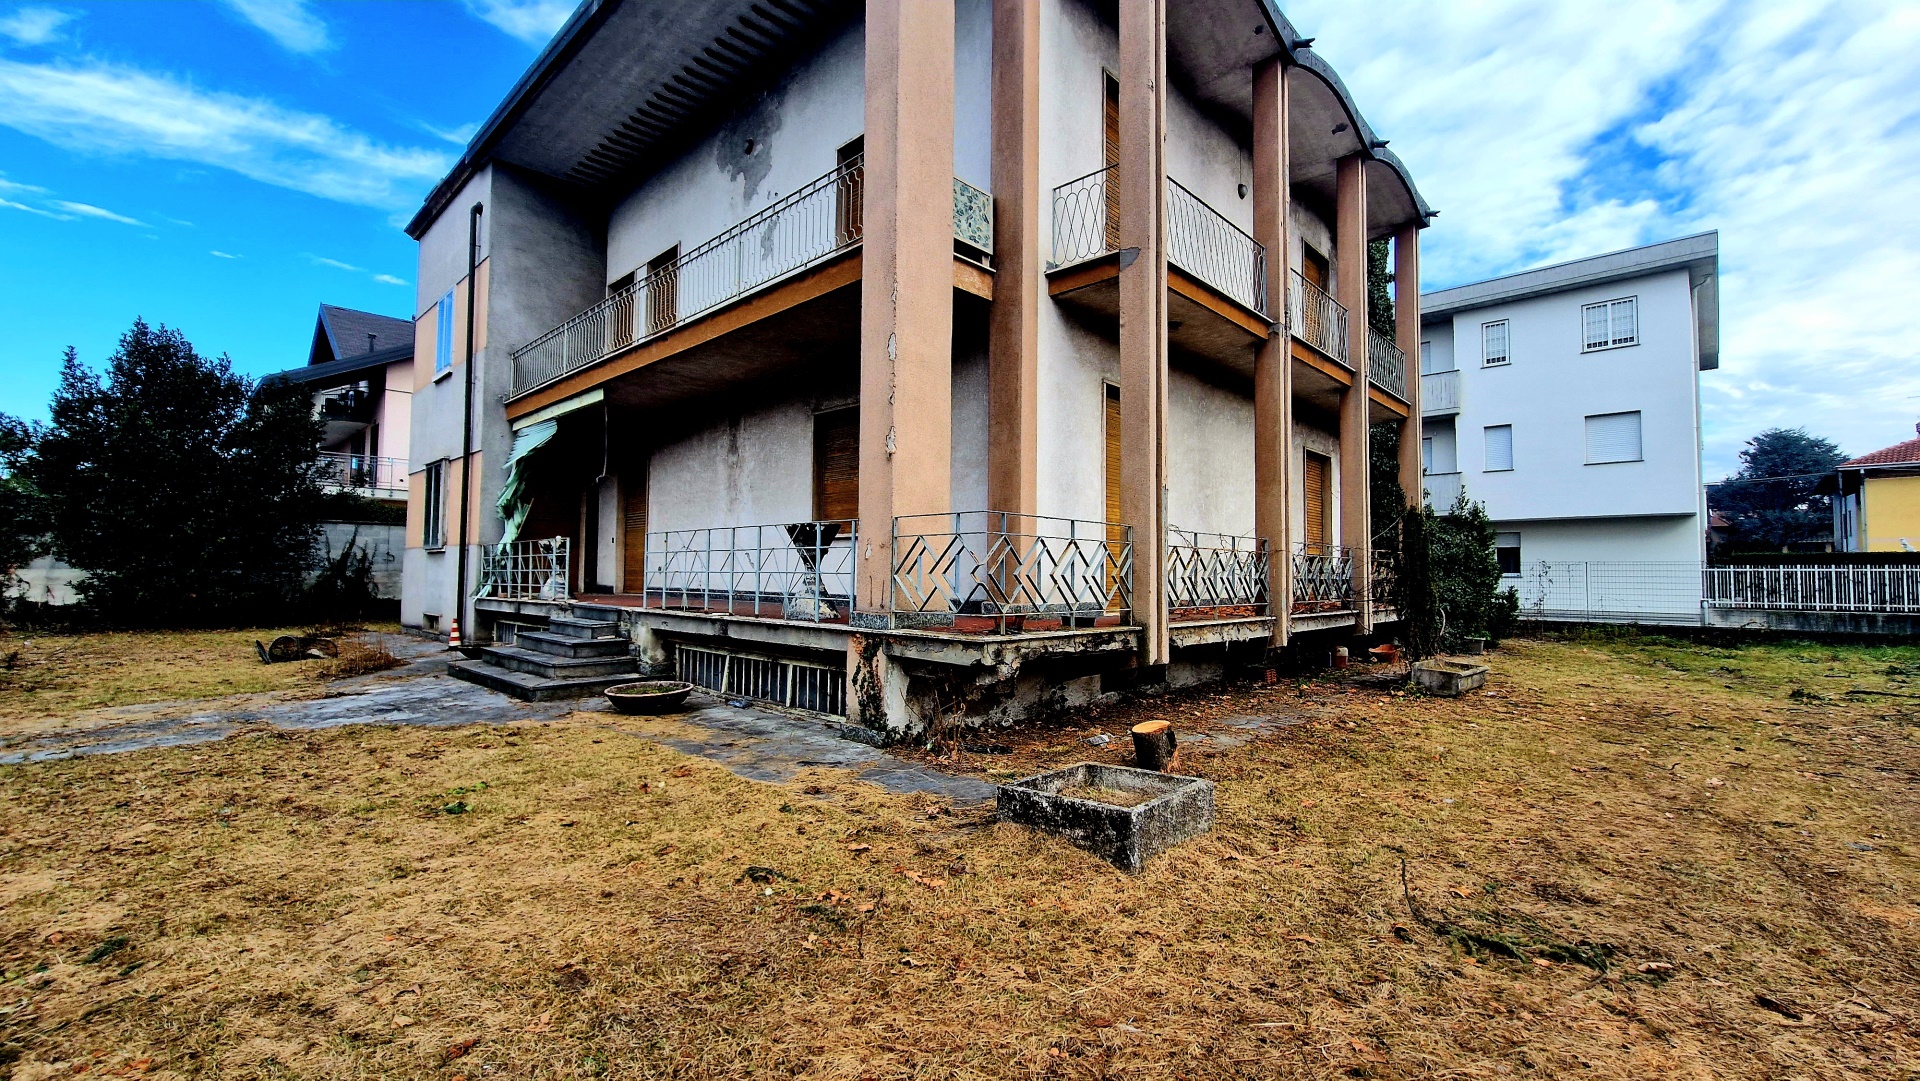 Villa in vendita a Fagnano Olona